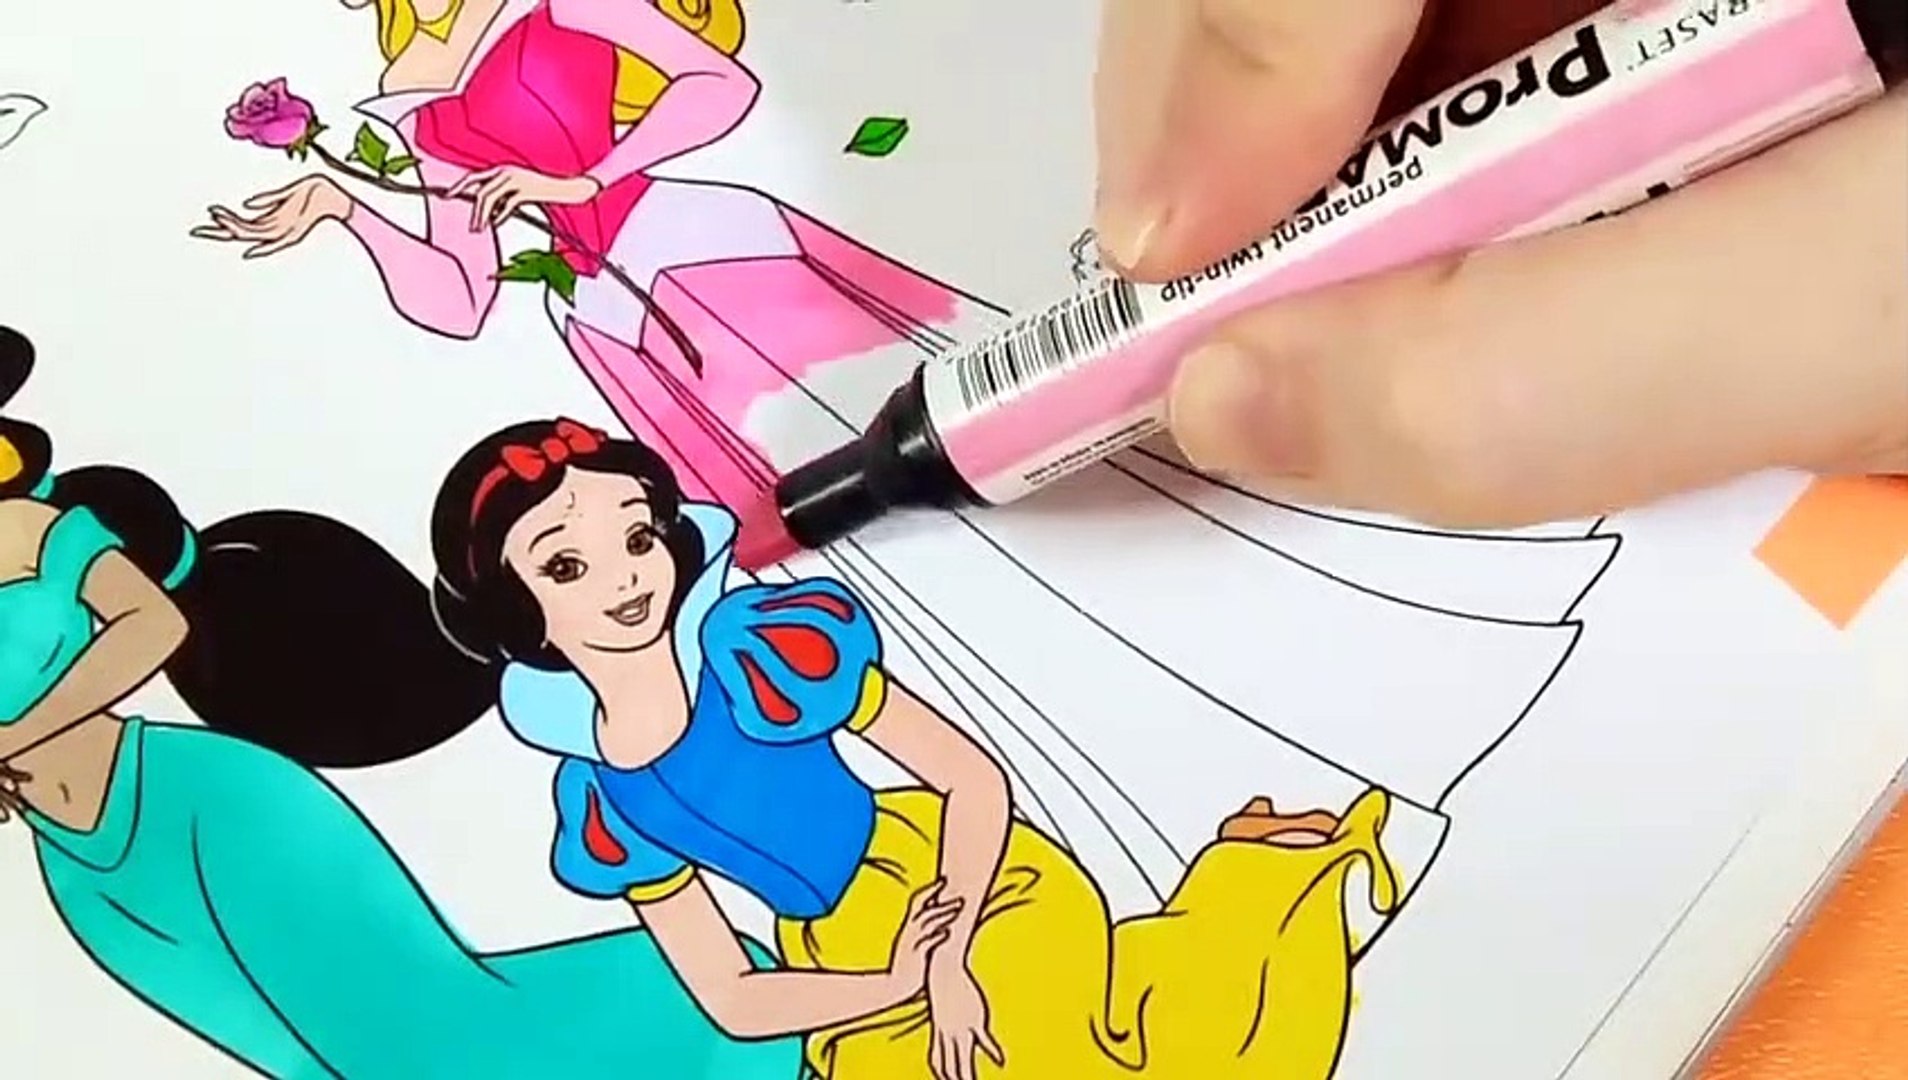 Princesa : Desenhos para colorir, Jogos gratuitos para crianças, Desenhos  para crianças, Leia, Artes manuais para crianças, Vídeos para crianças,  Noviadades diárias do Hellokids